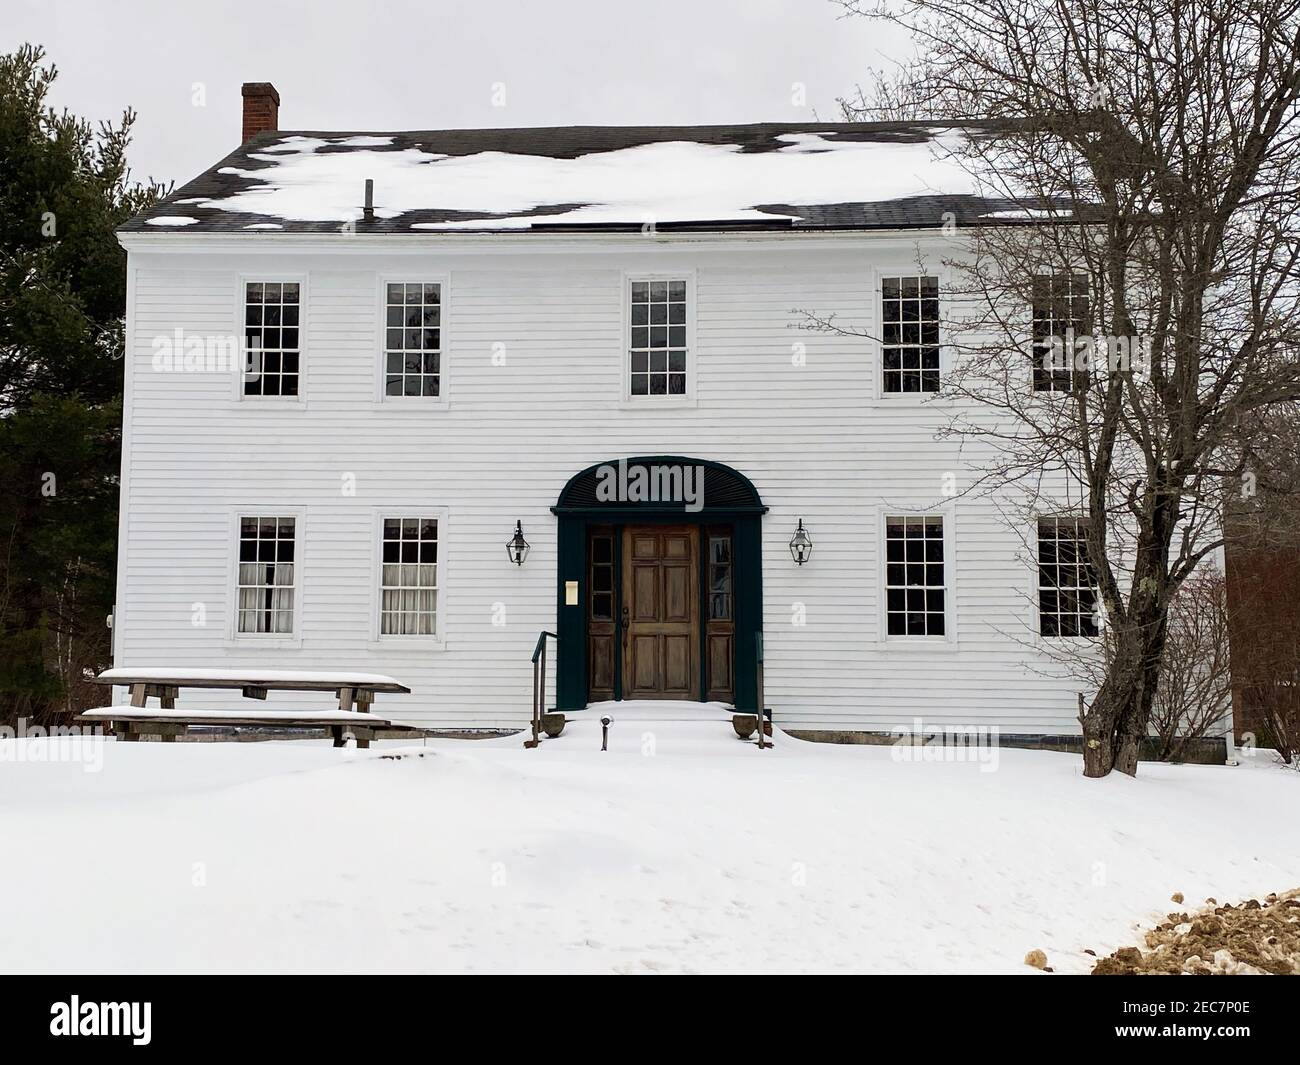 Dieses Foto des Nathaniel Hawthorne Hauses in Raymond, Maine, wurde im Februar 2021 aufgenommen. Das historische Haus, oben abgebildet, wurde um 1812 erbaut und liegt im südlichen Maine in der Nähe des Sebago Sees. Es wurde von 1812 bis etwa 1825 von dem berühmten amerikanischen Schriftsteller Nathaniel Hawthorne besetzt. Einige Konten Attribut so wenig wie ein Jahr Wohnsitz in diesem Haus, während andere schreiben mehrere Jahre. Die Jahre 1821-1825 waren Hawthorne Jahre in Bowdoin College, und die Association geht davon aus, dass er blieb mit dem Haus in Raymond während dieser Zeit. Die Spanne von 1812-1825 beschreibt Th Stockfoto